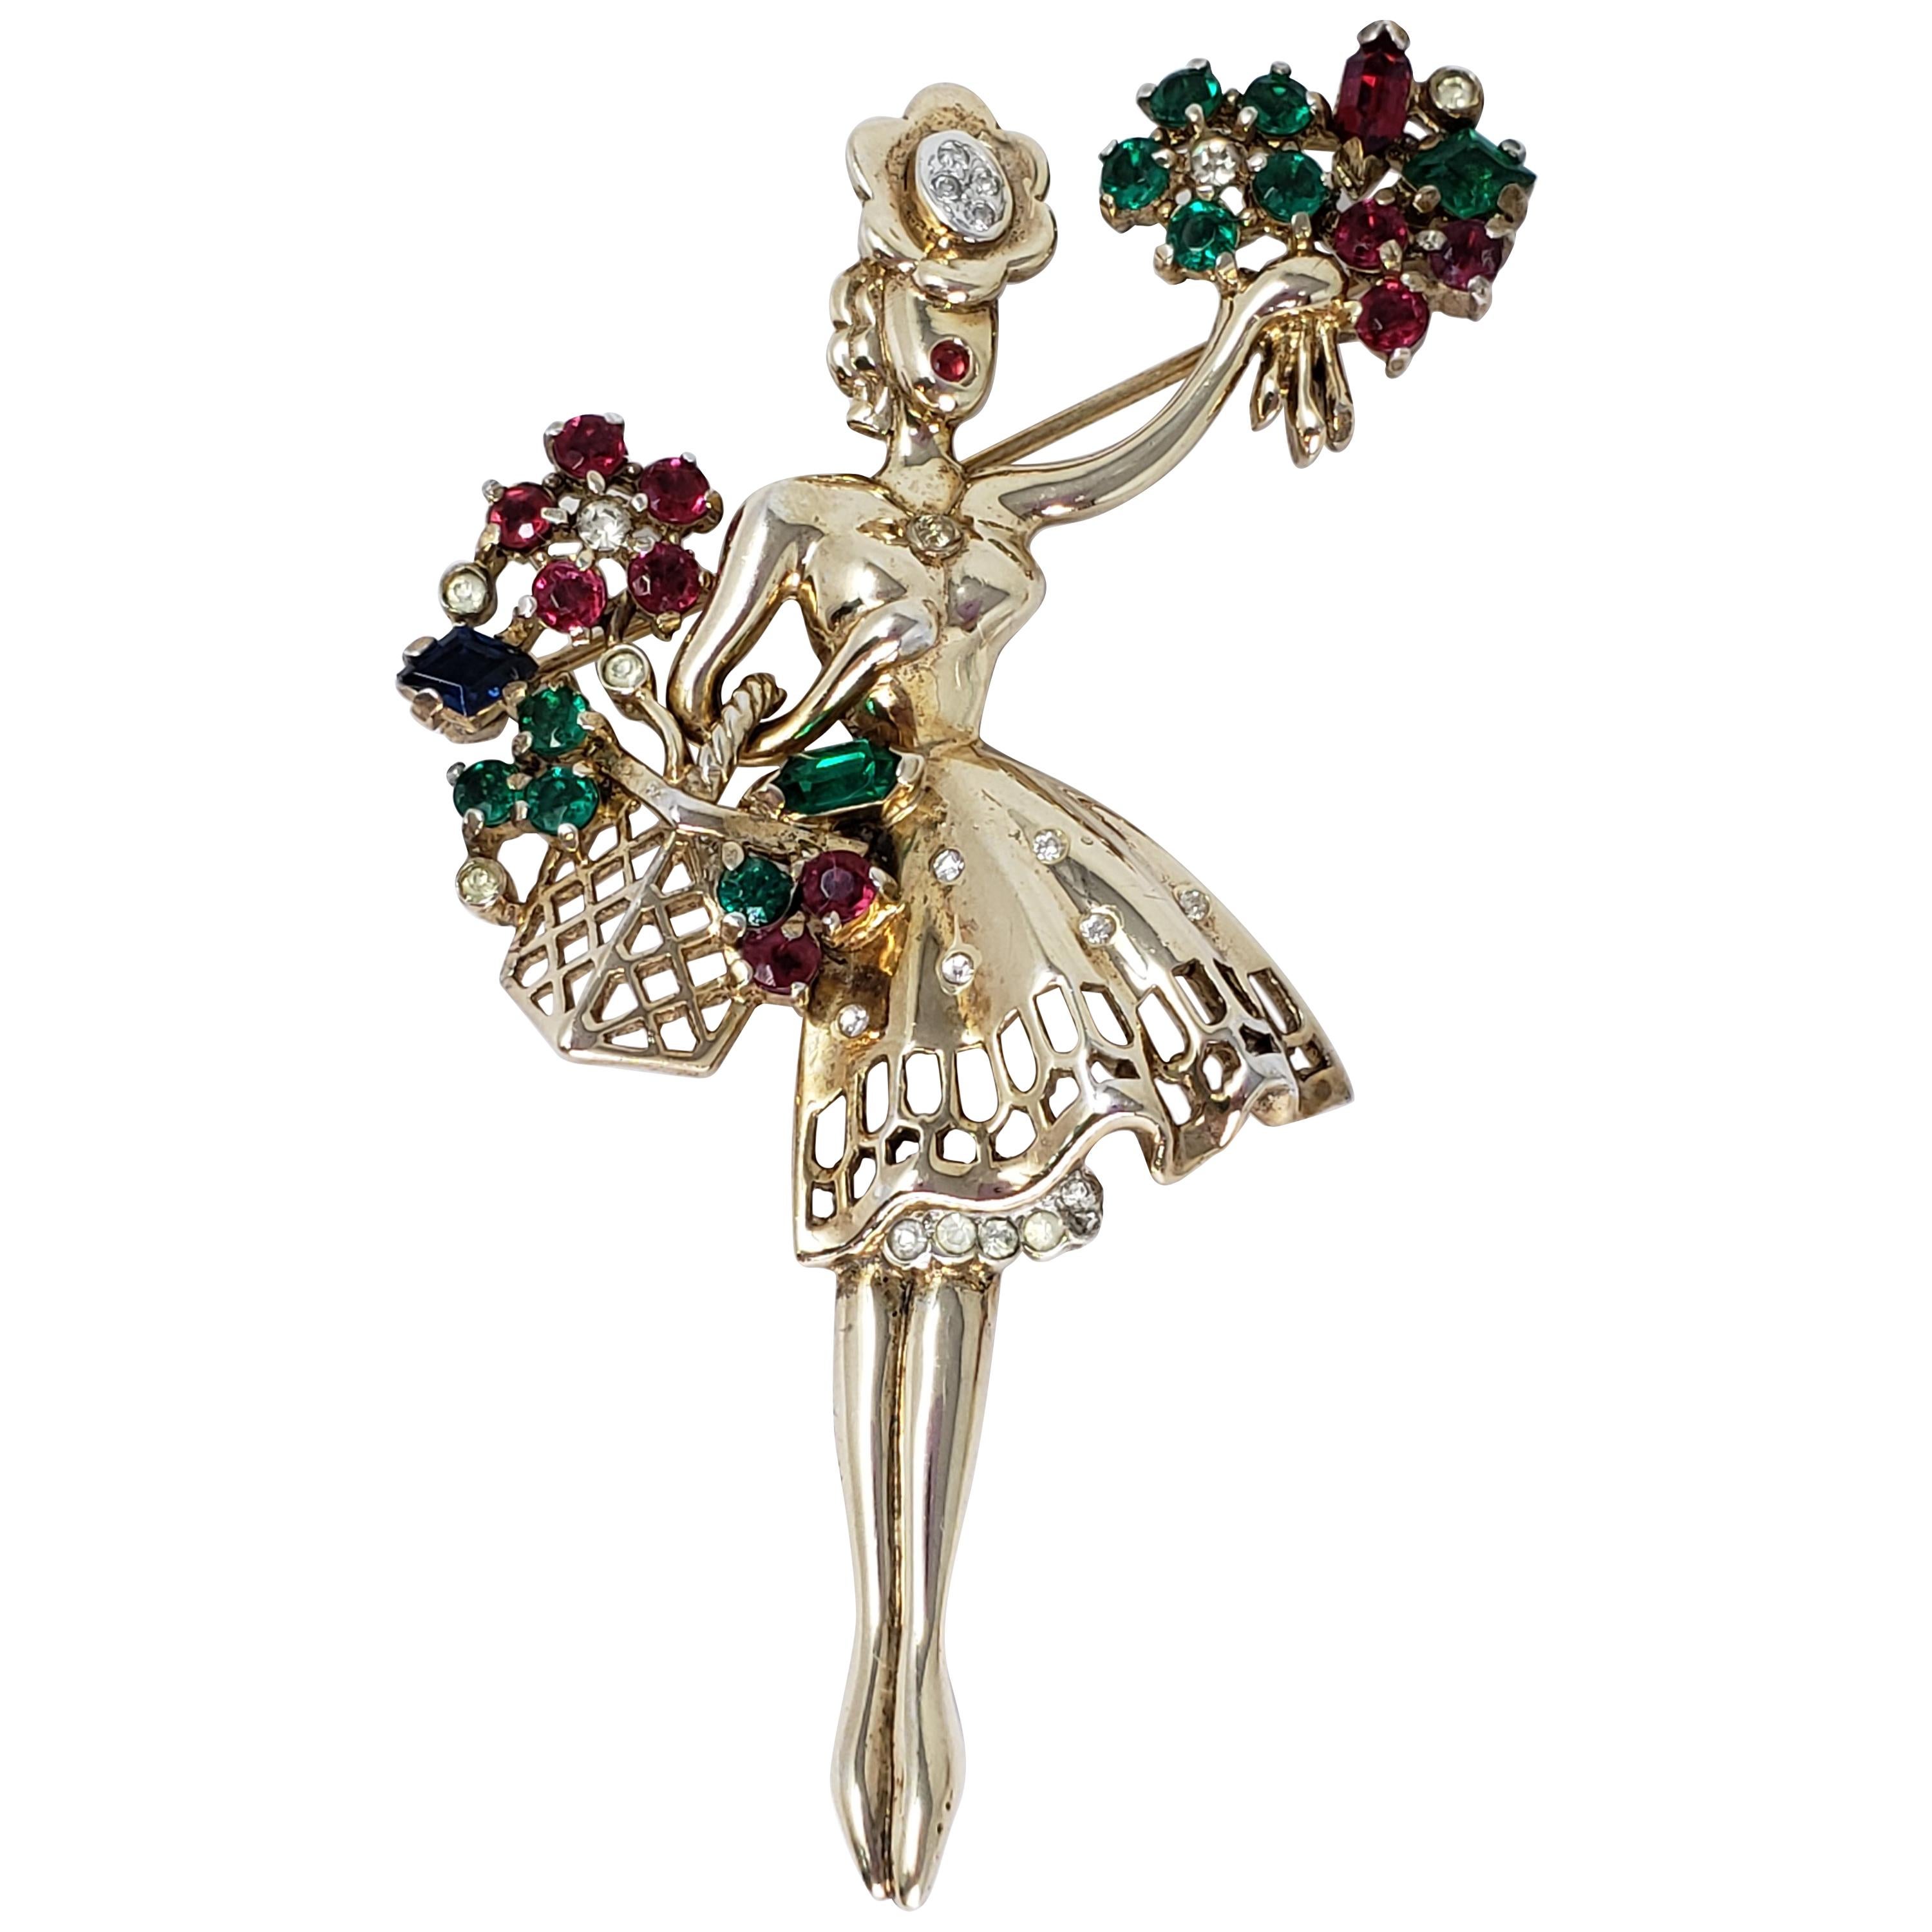 Trifari Crown 1947 Blumenmädchen Sterling Silber Brosche Pin mit Kristallen in Gold